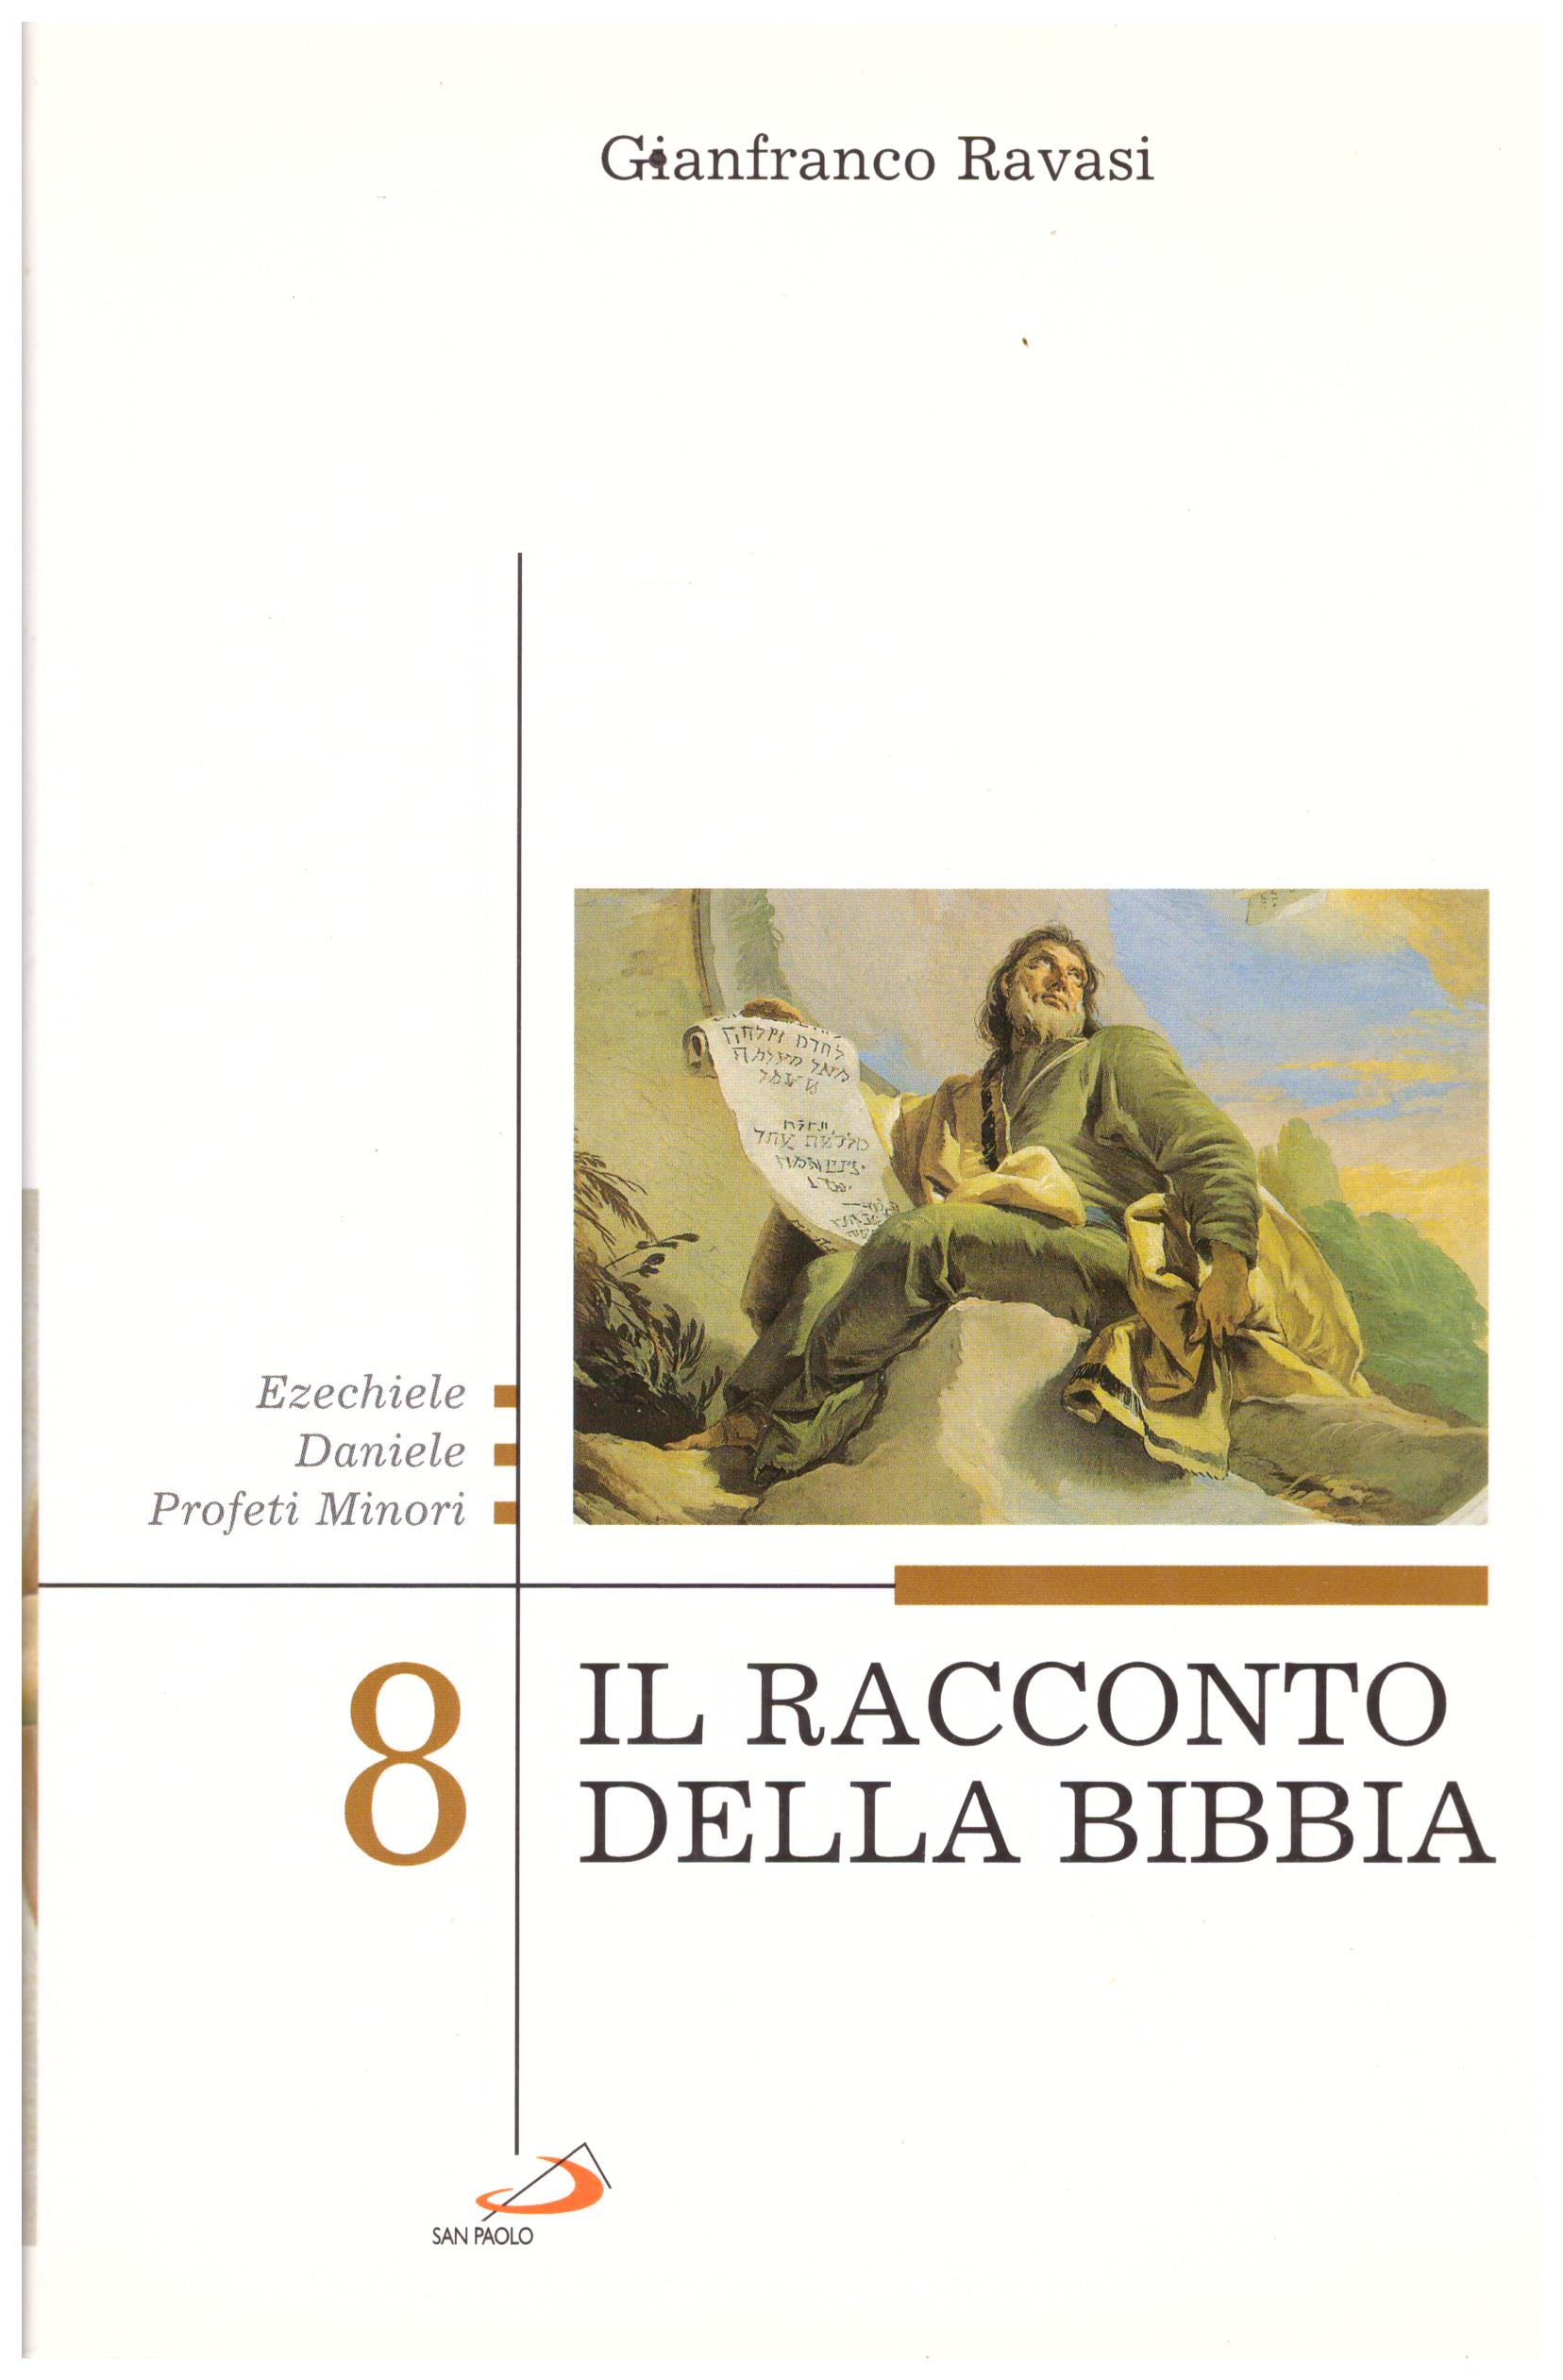 Titolo: Il racconto della Bibbia 8 Ezechiele, Daniele, profeti minori Autore: Gianfanco Ravasi Editore: jesus 2006